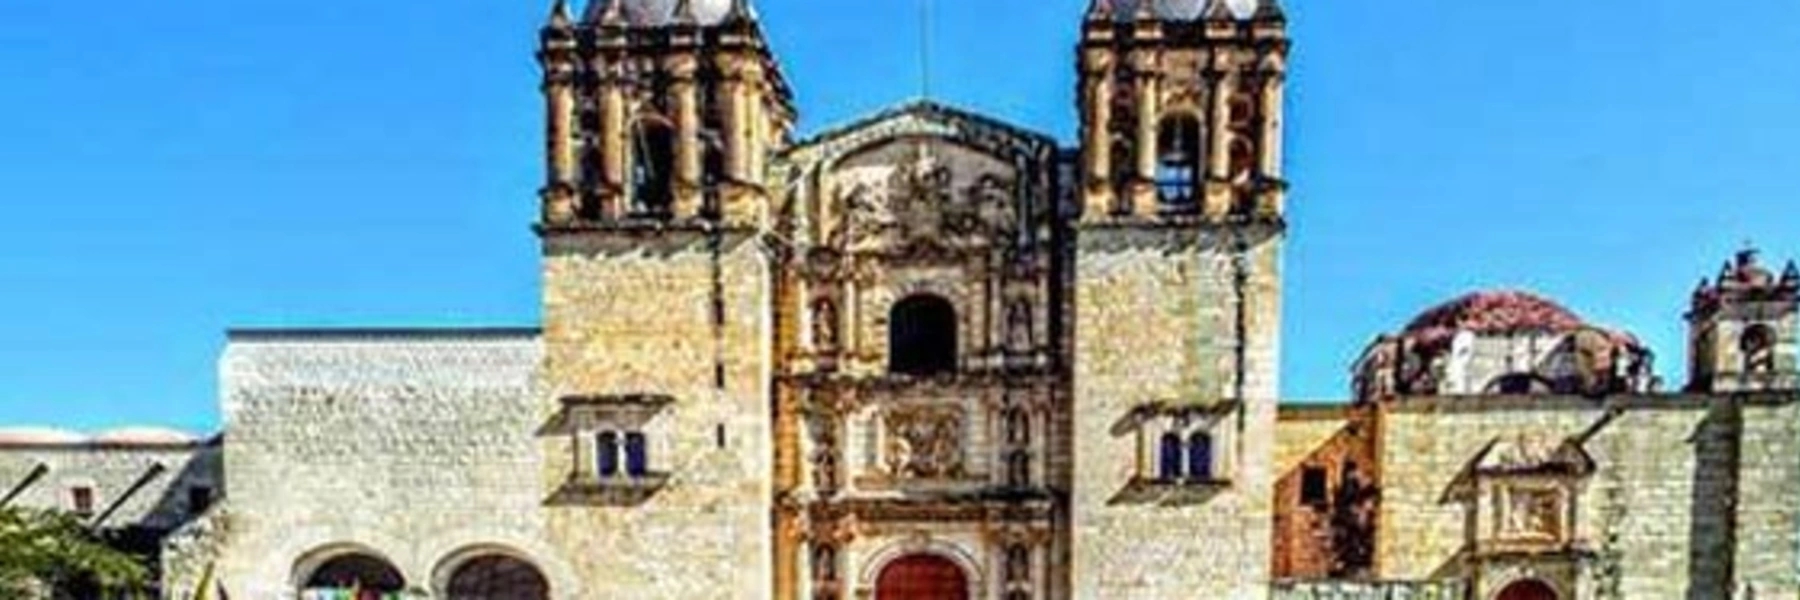 Oaxaca Mexico